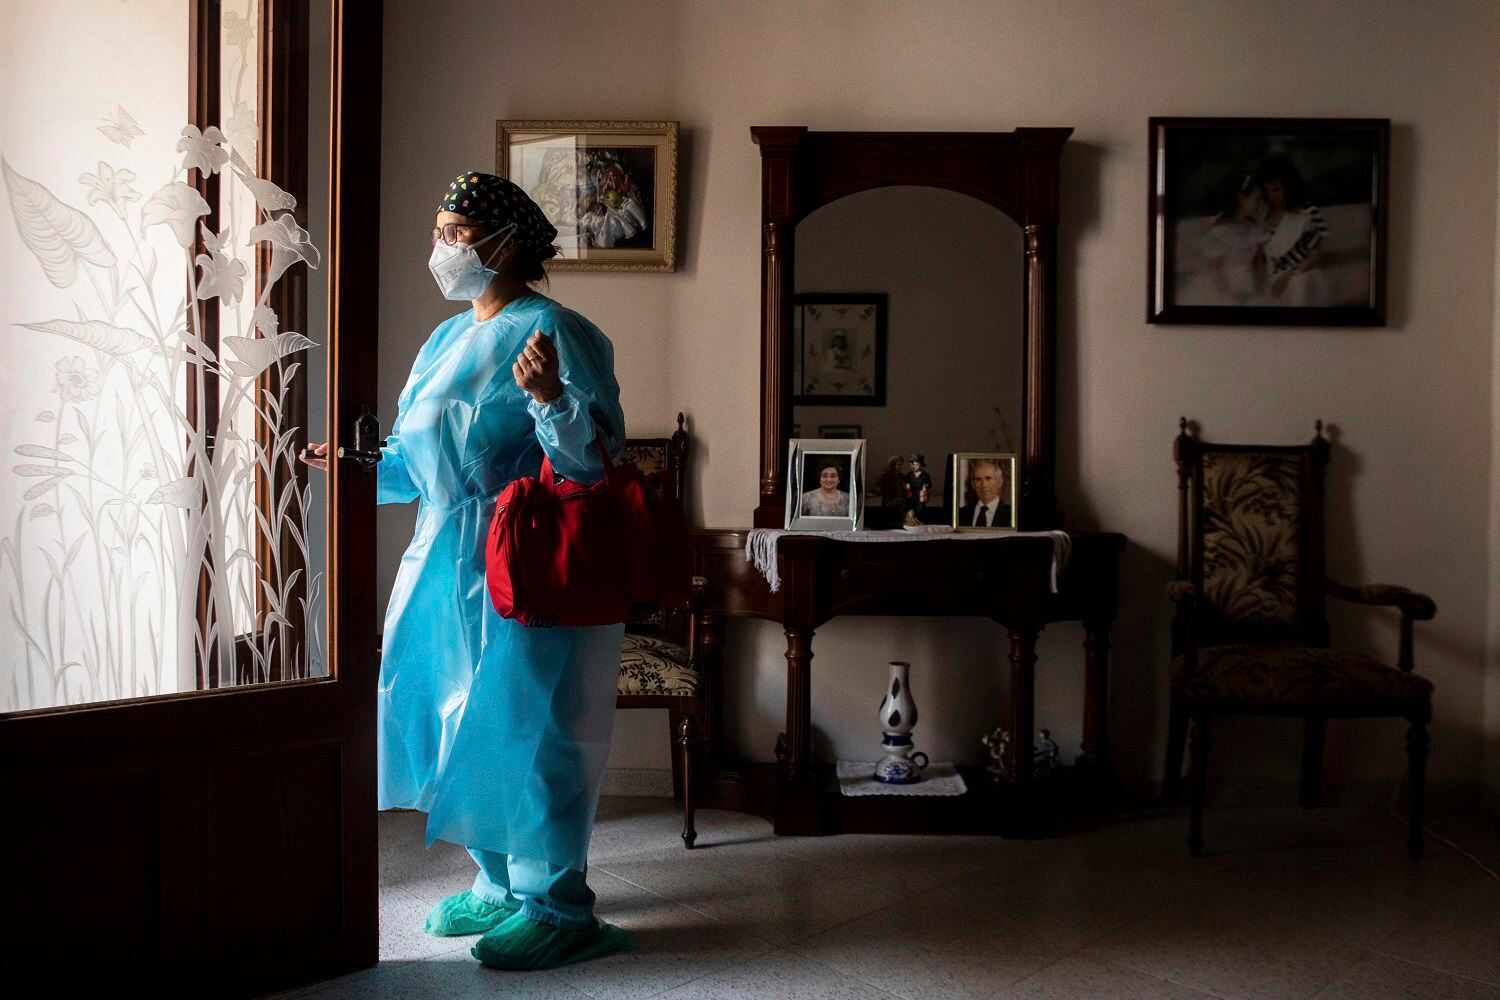 La enfermera Pilar Rodríguez abandona la casa de su paciente Antonia Crespi, de 93 años, en la localidad de Sa Pobla, en la isla española de Mallorca, el 30 de abril de 2021. (AP Foto/Francisco Ubilla)